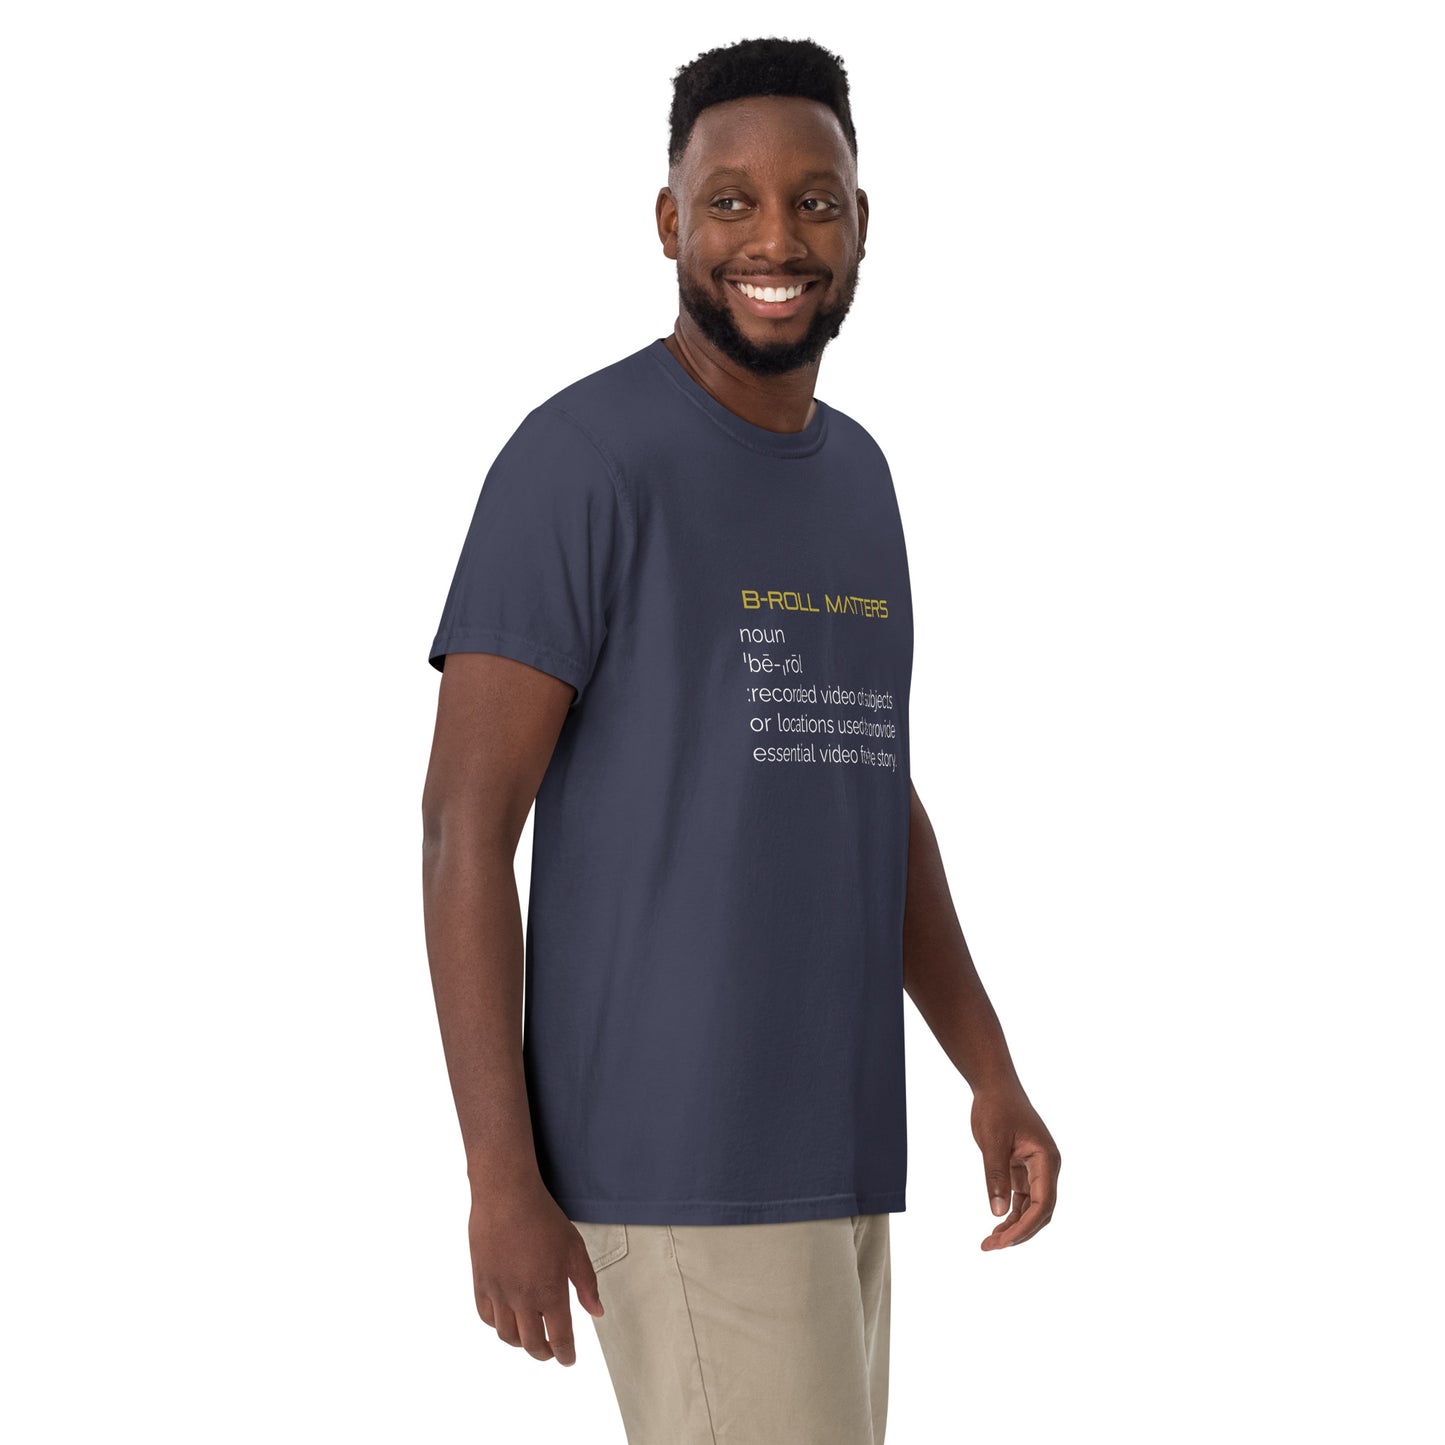 BRoll Matters Men’s garment-dyed heavyweight t-shirt